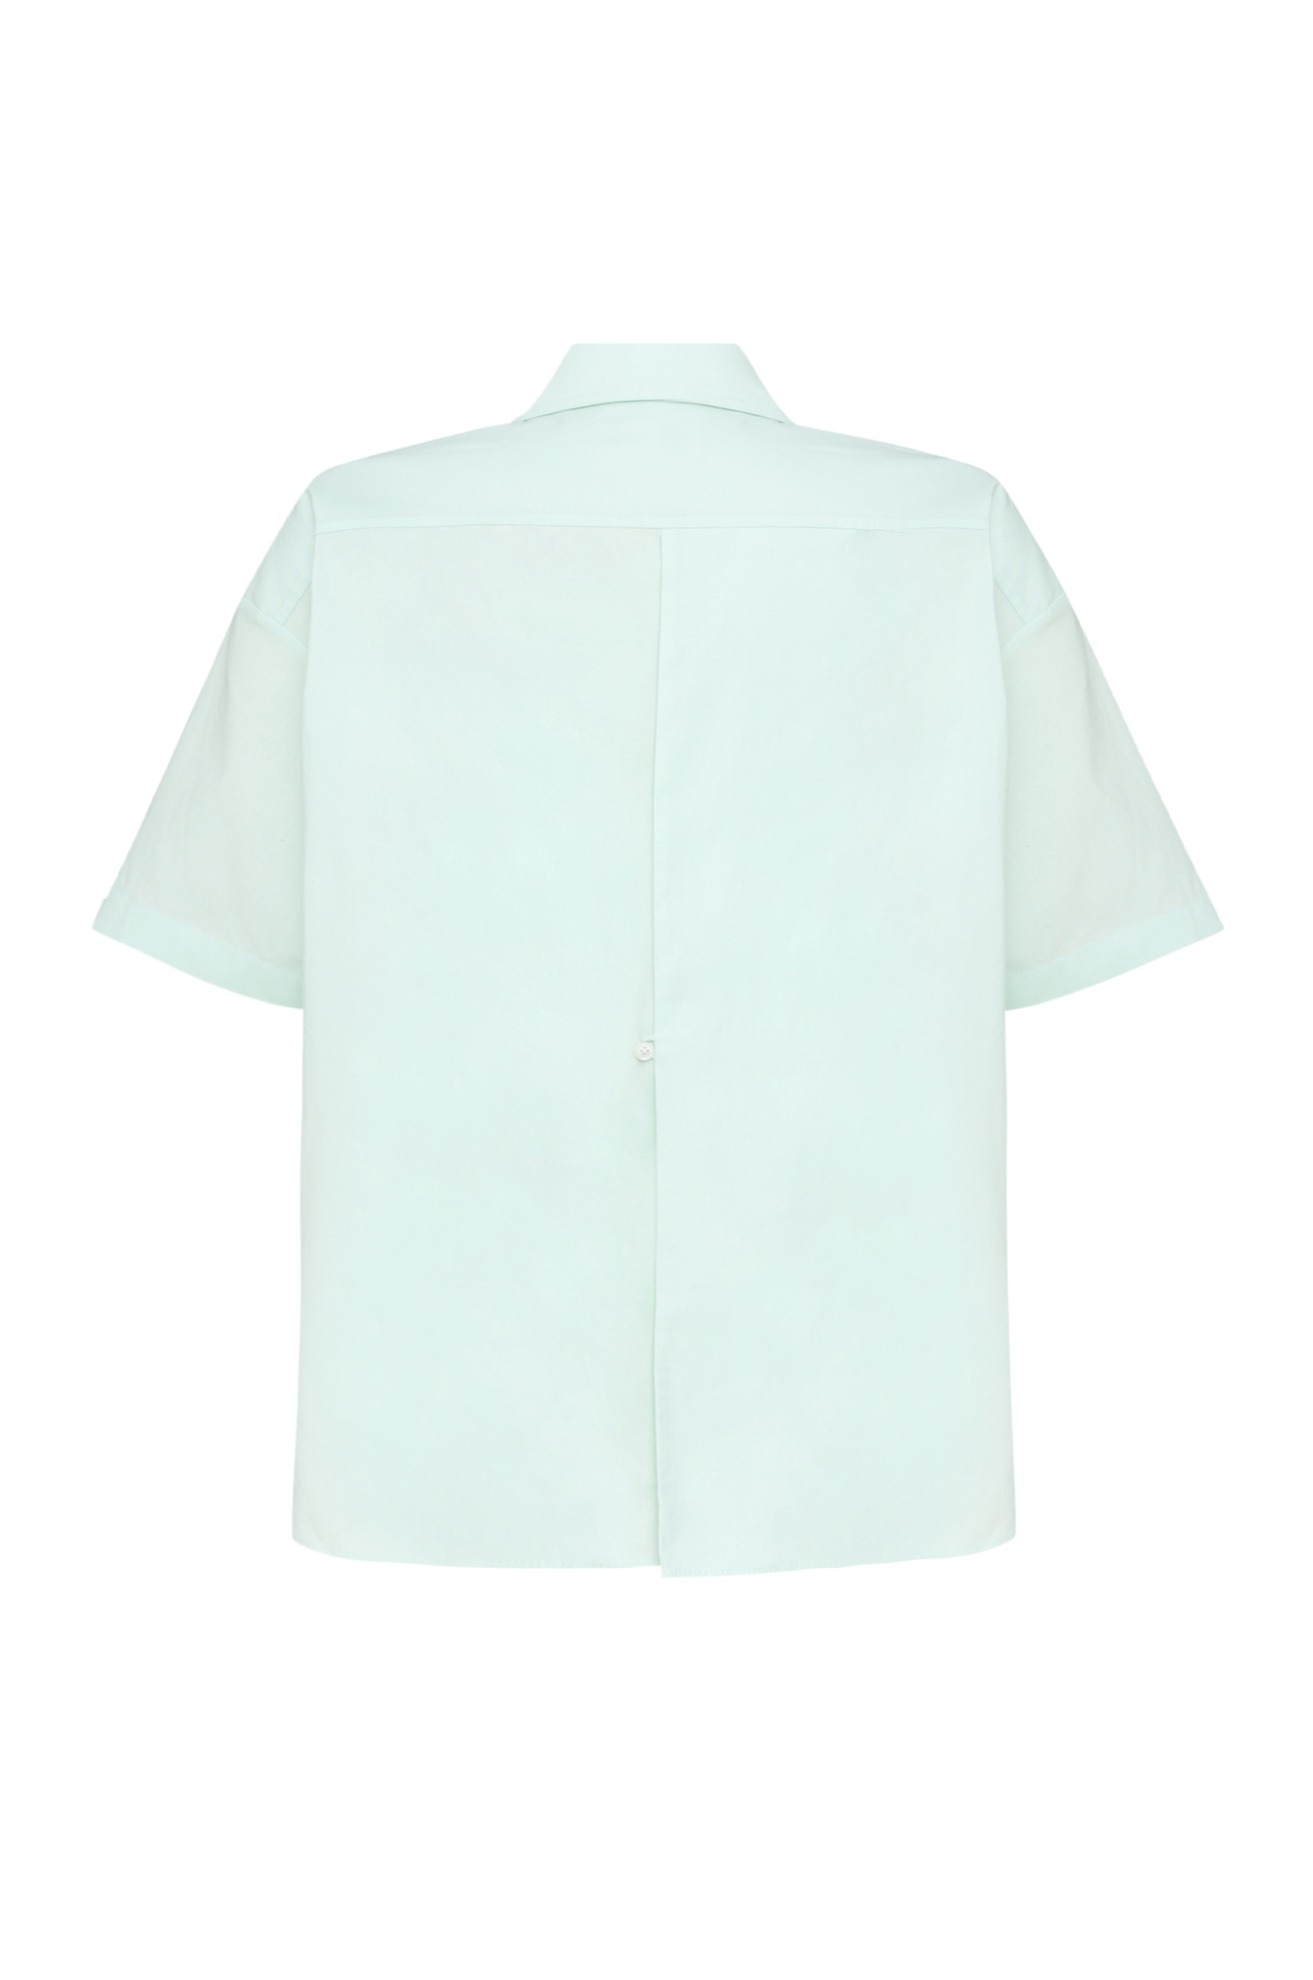 Hideable Button Short Sleeve Shirt (Mint)